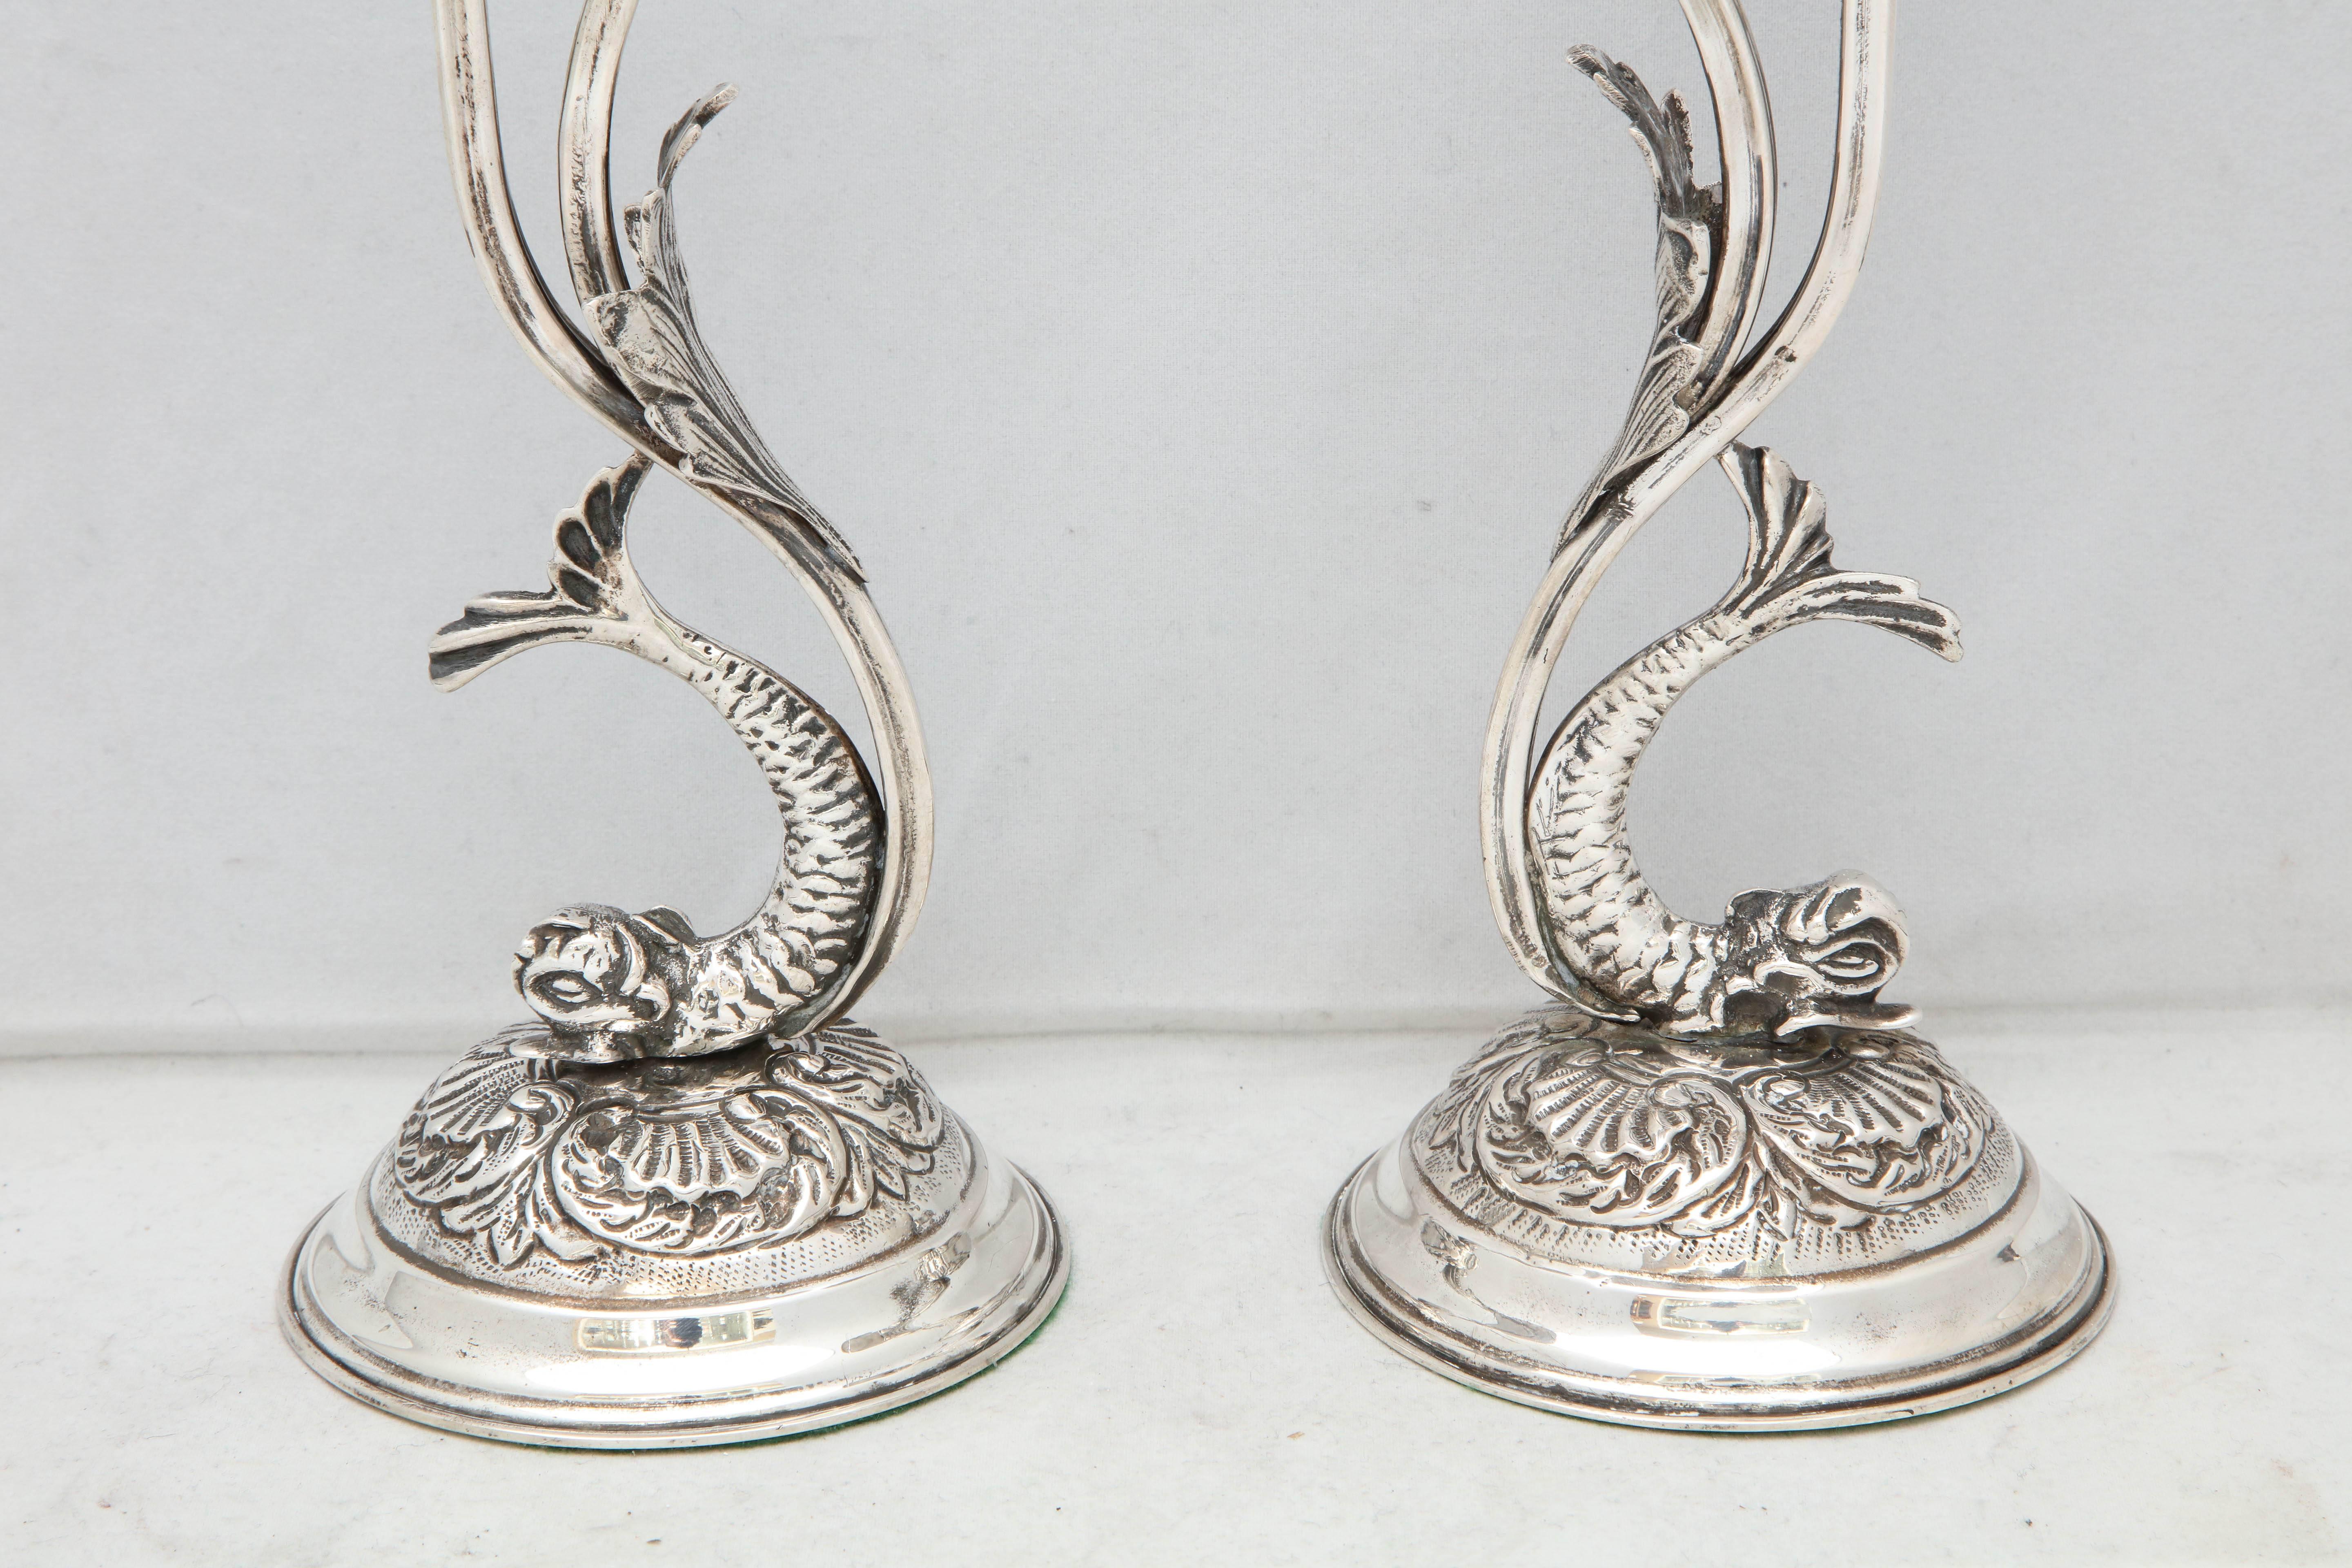  Paar kontinentale Silber-Kerzenständer in Delphinform im Jugendstil (Europäisch)